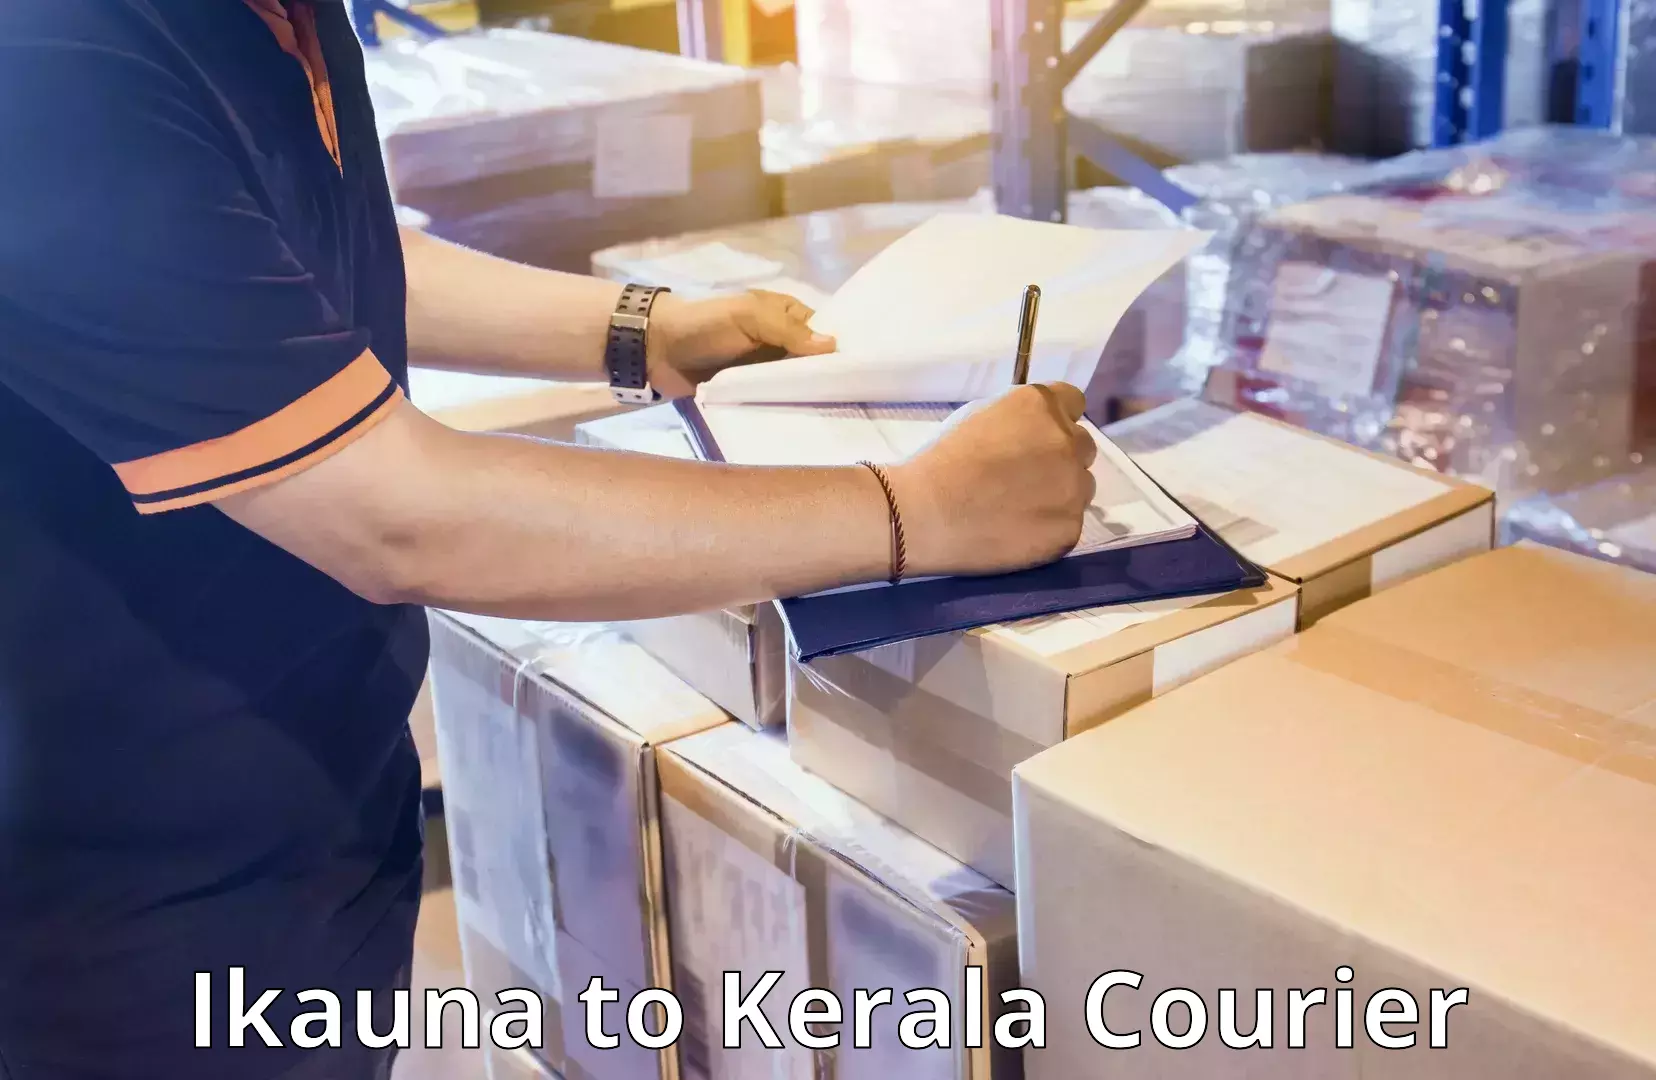 Personal effects shipping Ikauna to Kerala